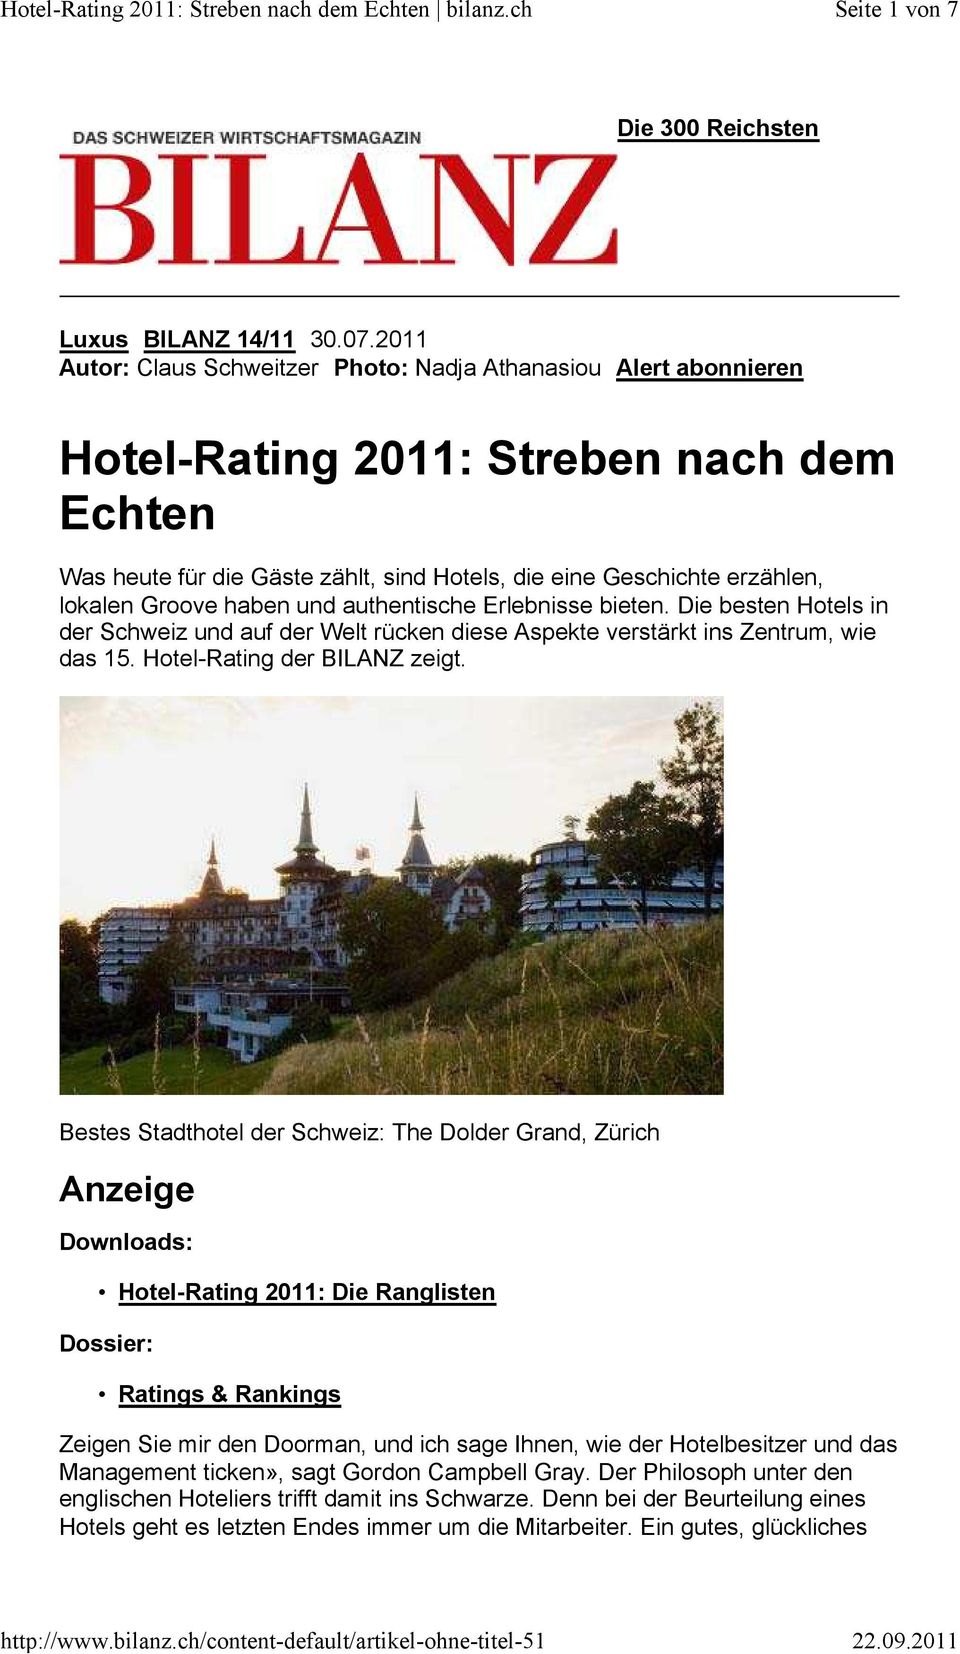 Groove haben und authentische Erlebnisse bieten. Die besten Hotels in der Schweiz und auf der Welt rücken diese Aspekte verstärkt ins Zentrum, wie das 15. Hotel-Rating der BILANZ zeigt.